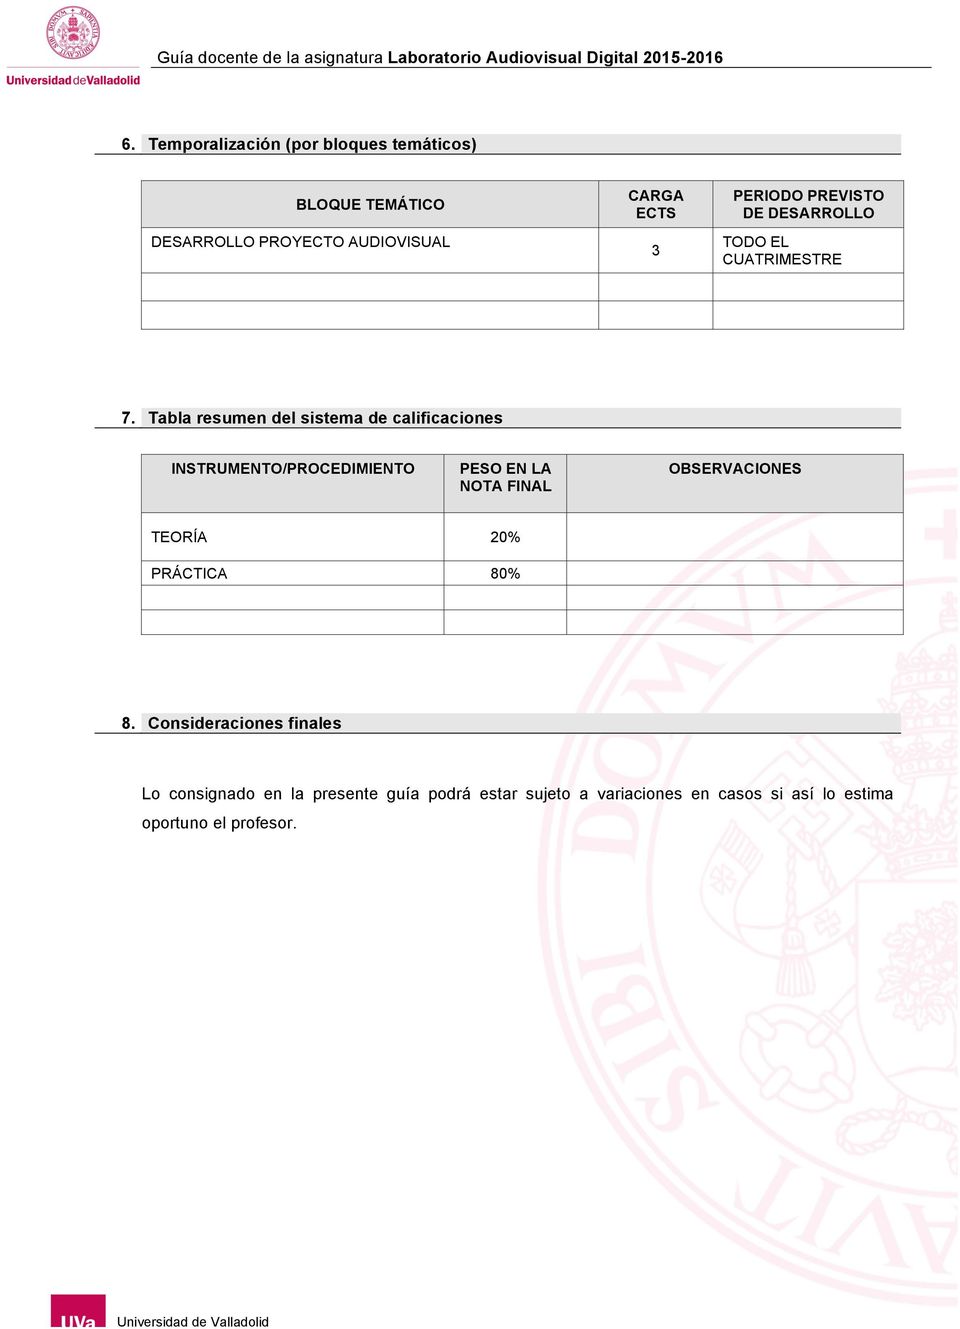 Tabla resumen del sistema de calificaciones INSTRUMENTO/PROCEDIMIENTO PESO EN LA NOTA FINAL OBSERVACIONES